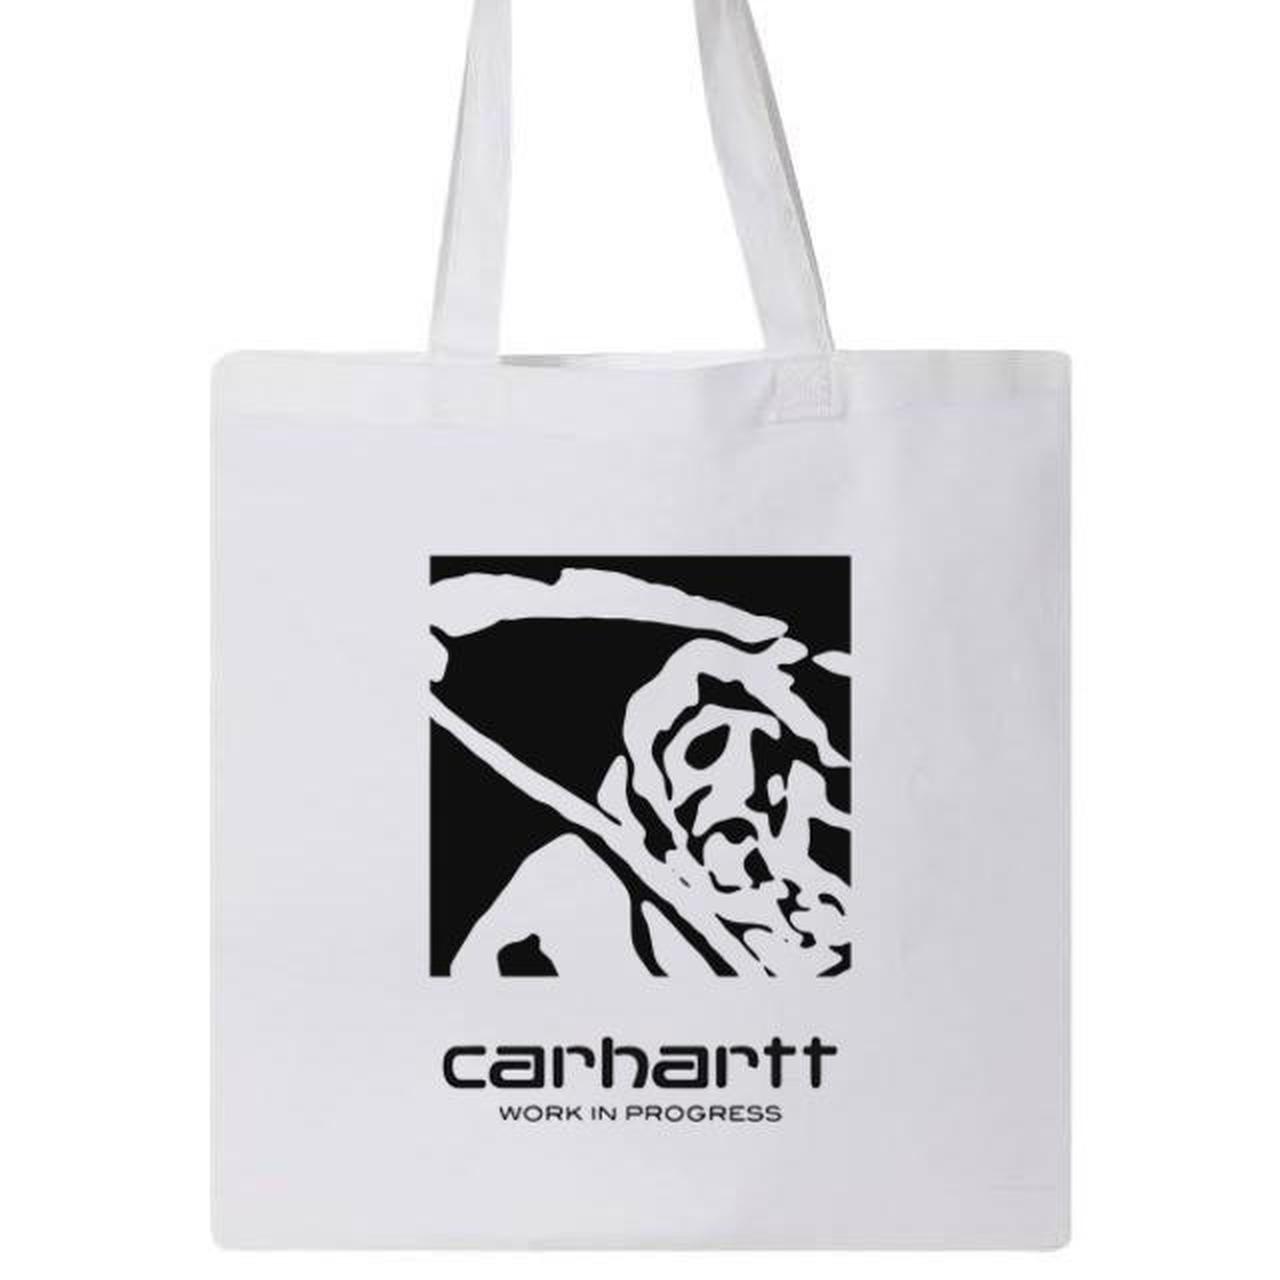 Carhartt Work In Progress bags for Women